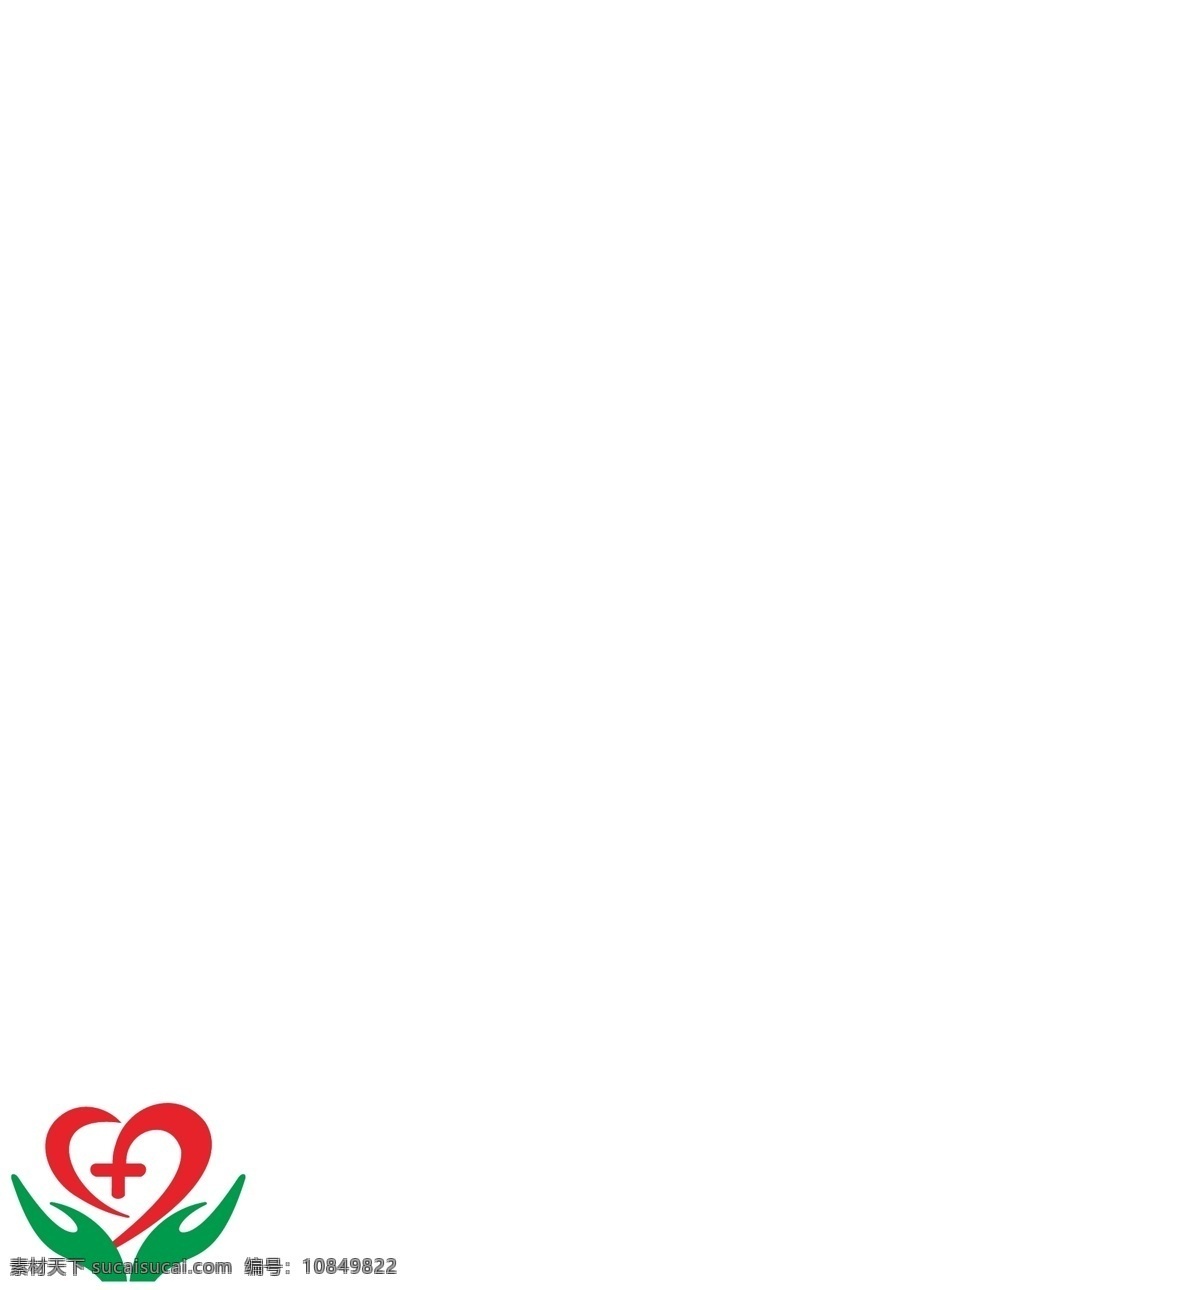 医院标识 医疗行业图标 红十字 医院图标 妇幼保健院 医院标志设计 爱心 医院logo 爱心标志 爱心标识